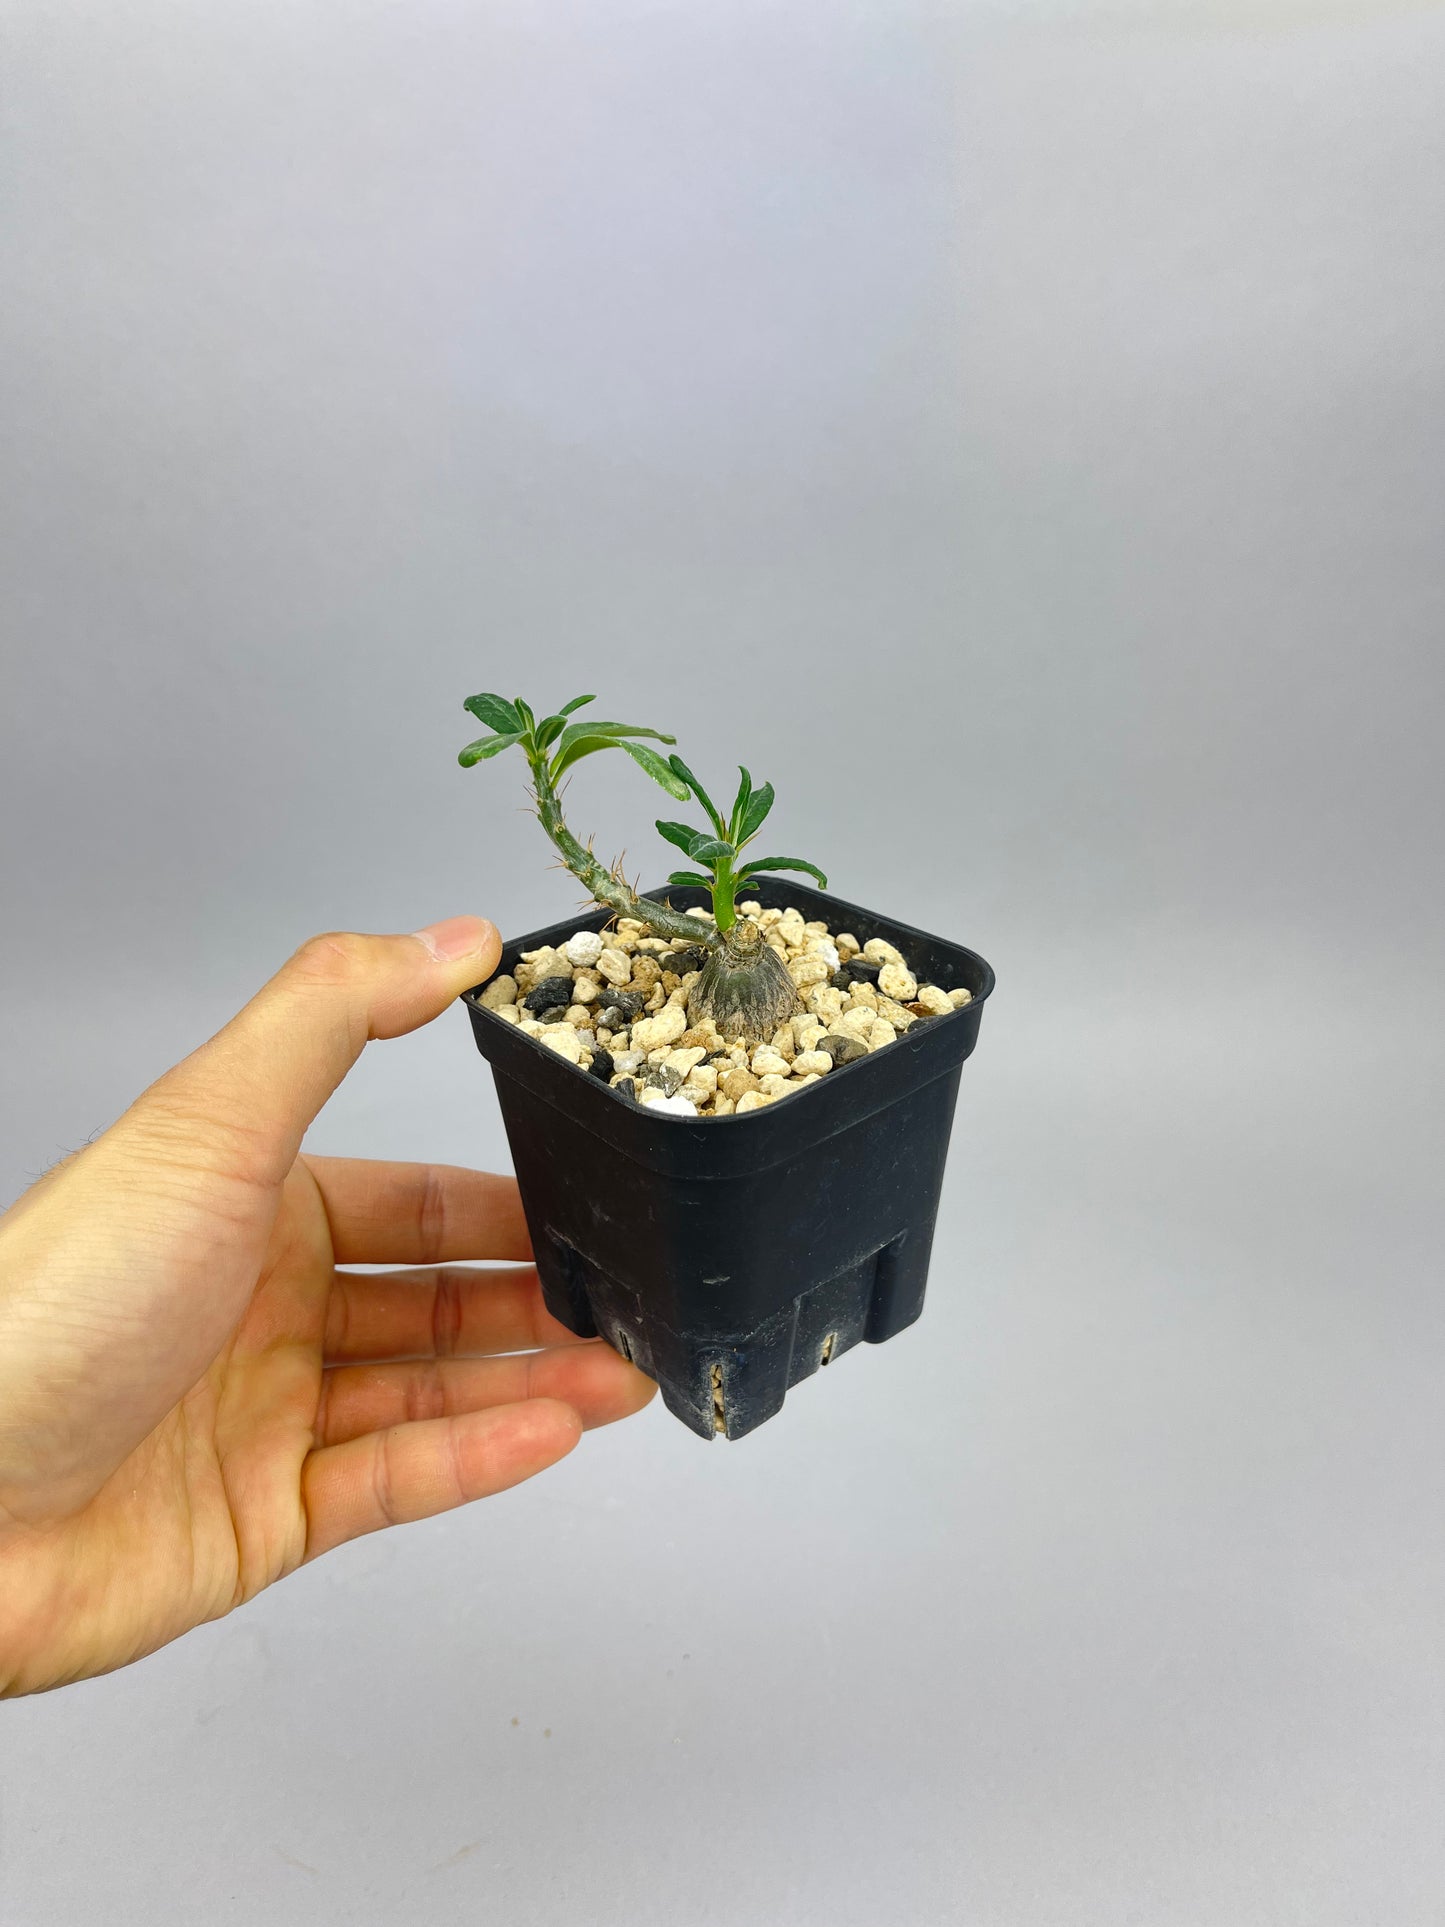 パキポディウム サキュレンタム「Pachypodium succulentum」/PA0007 ①